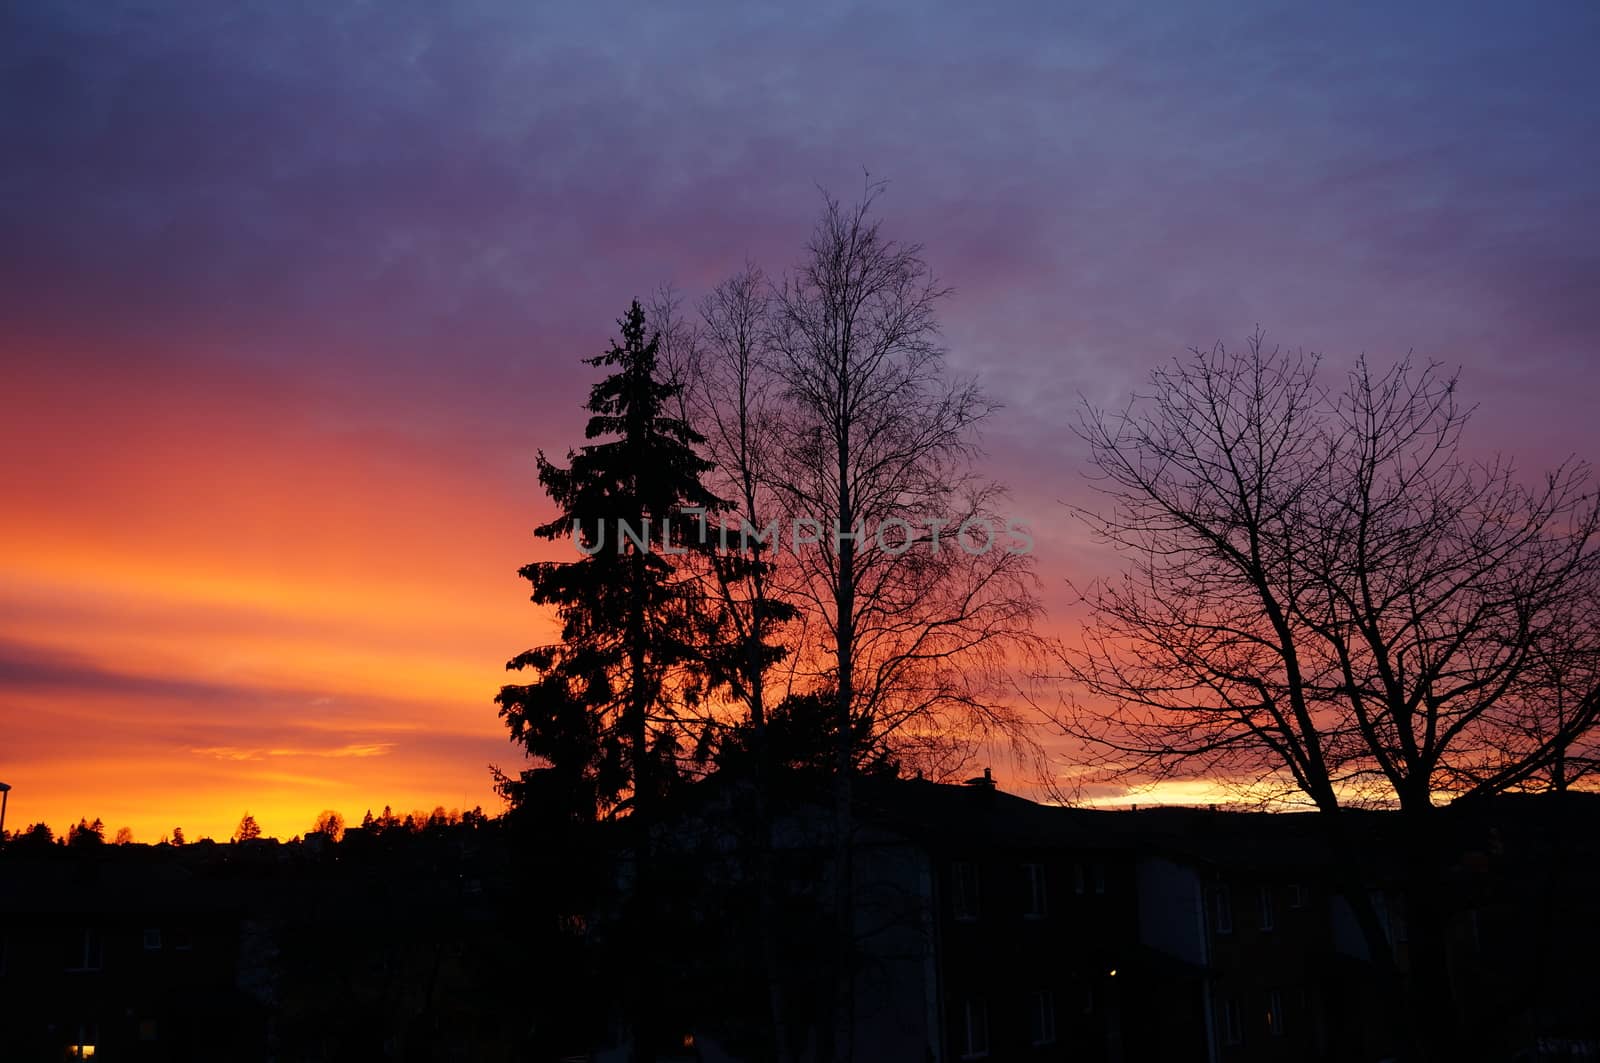 Beautiful sunset in Oslo